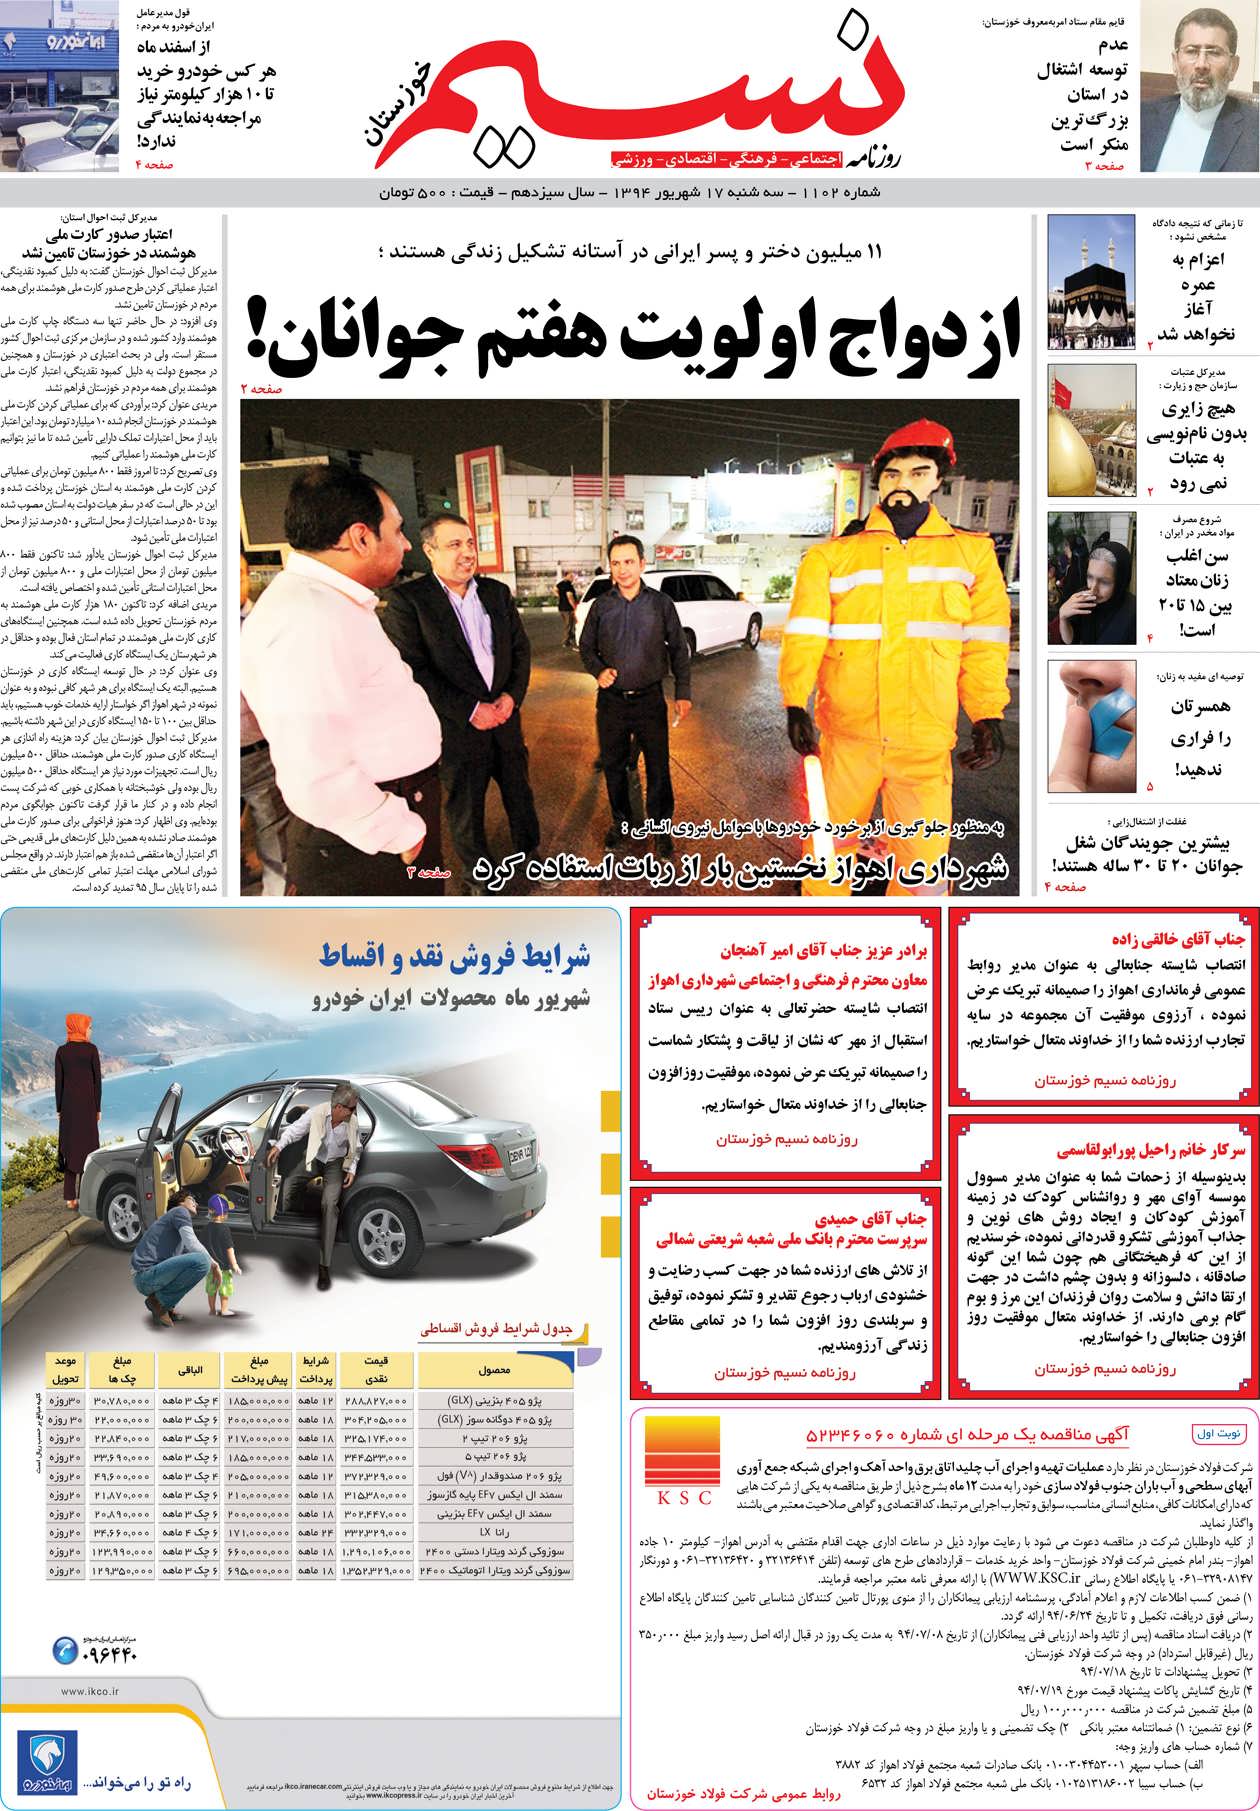 صفحه اصلی روزنامه نسیم شماره 1102